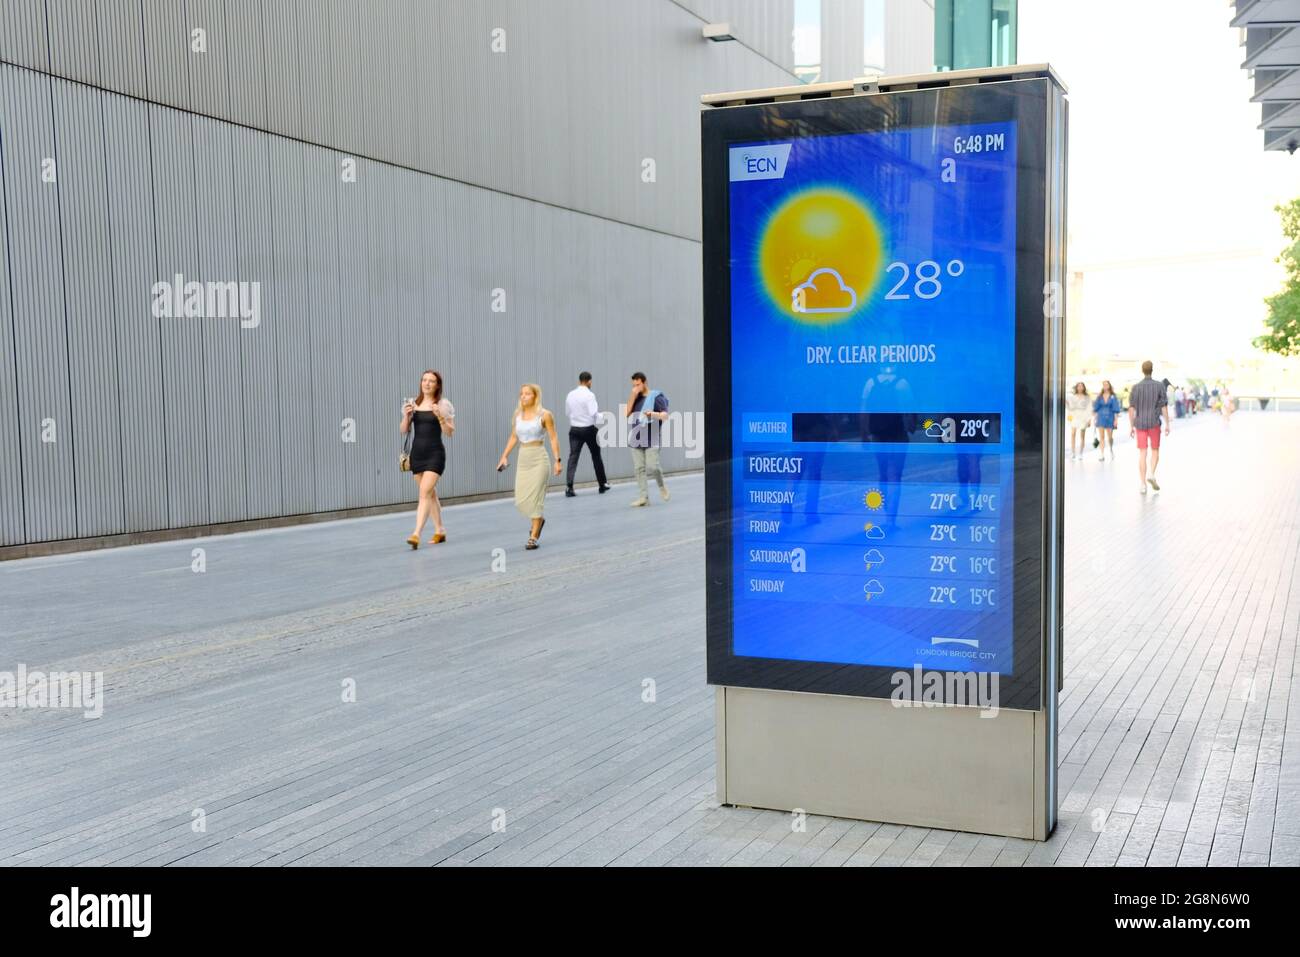 Eine digitale Werbetafel, die eine Wettervorhersage während einer Hitzewelle anzeigt, wo das Met Office eine bernsteinfarbene Hitzewarnung ausgab. Stockfoto